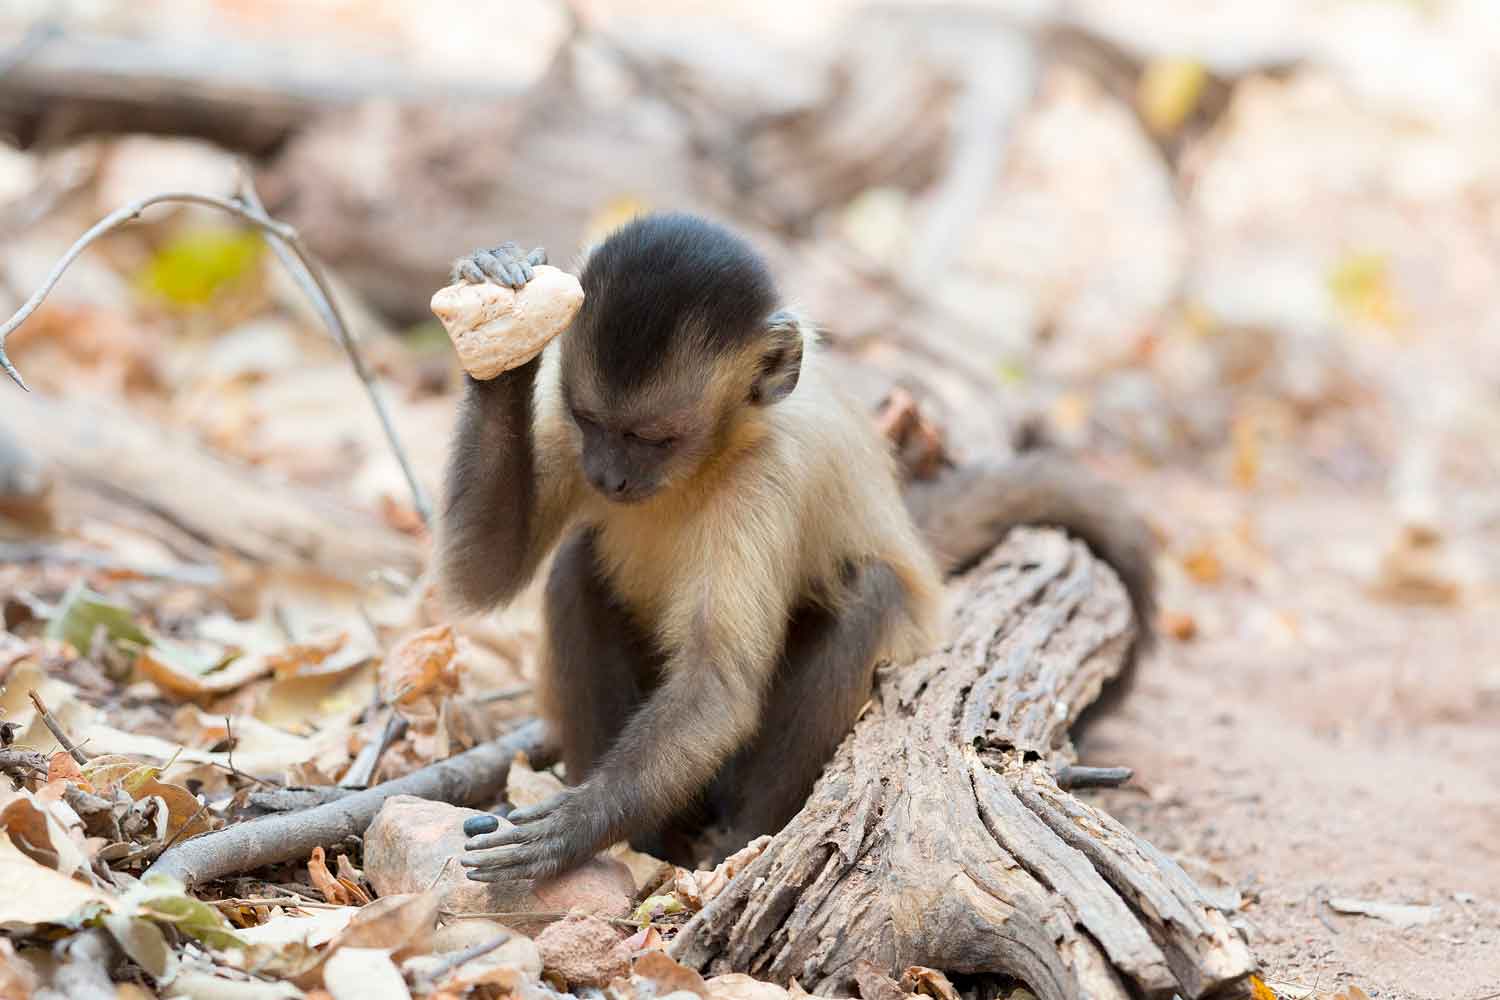 New World monkey - Wikipedia